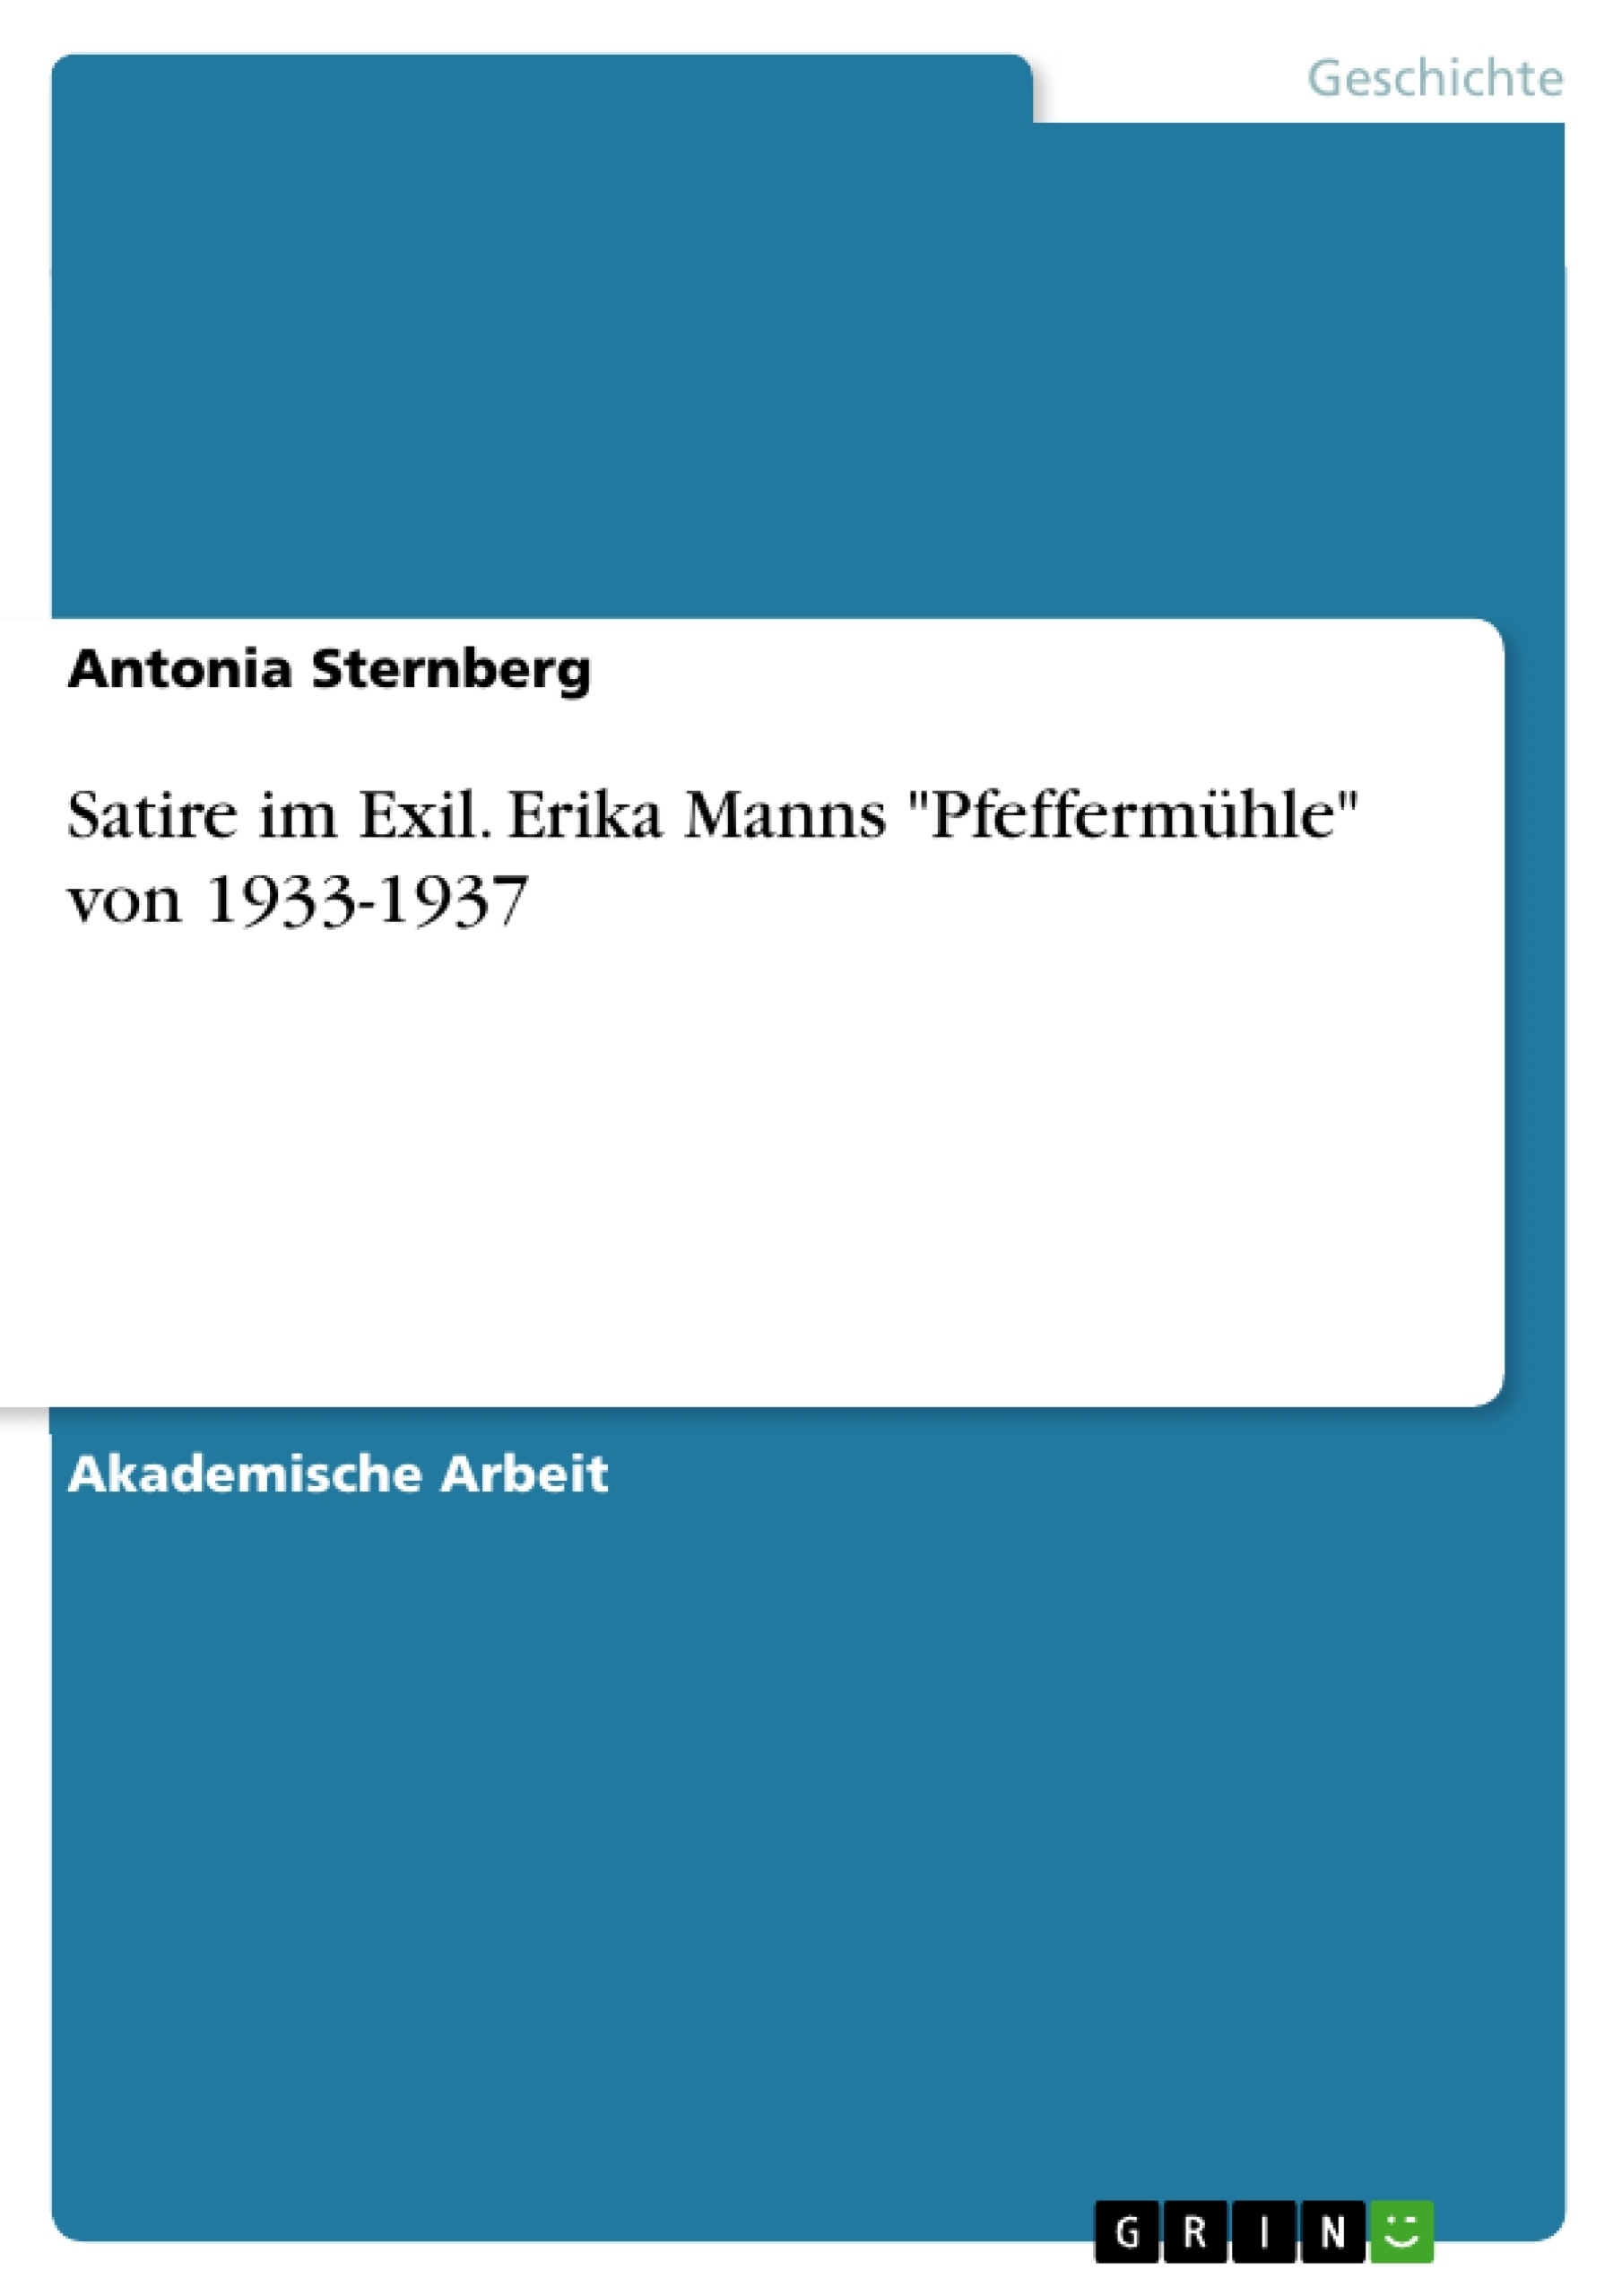 Titre: Satire im Exil. Erika Manns "Pfeffermühle" von 1933-1937